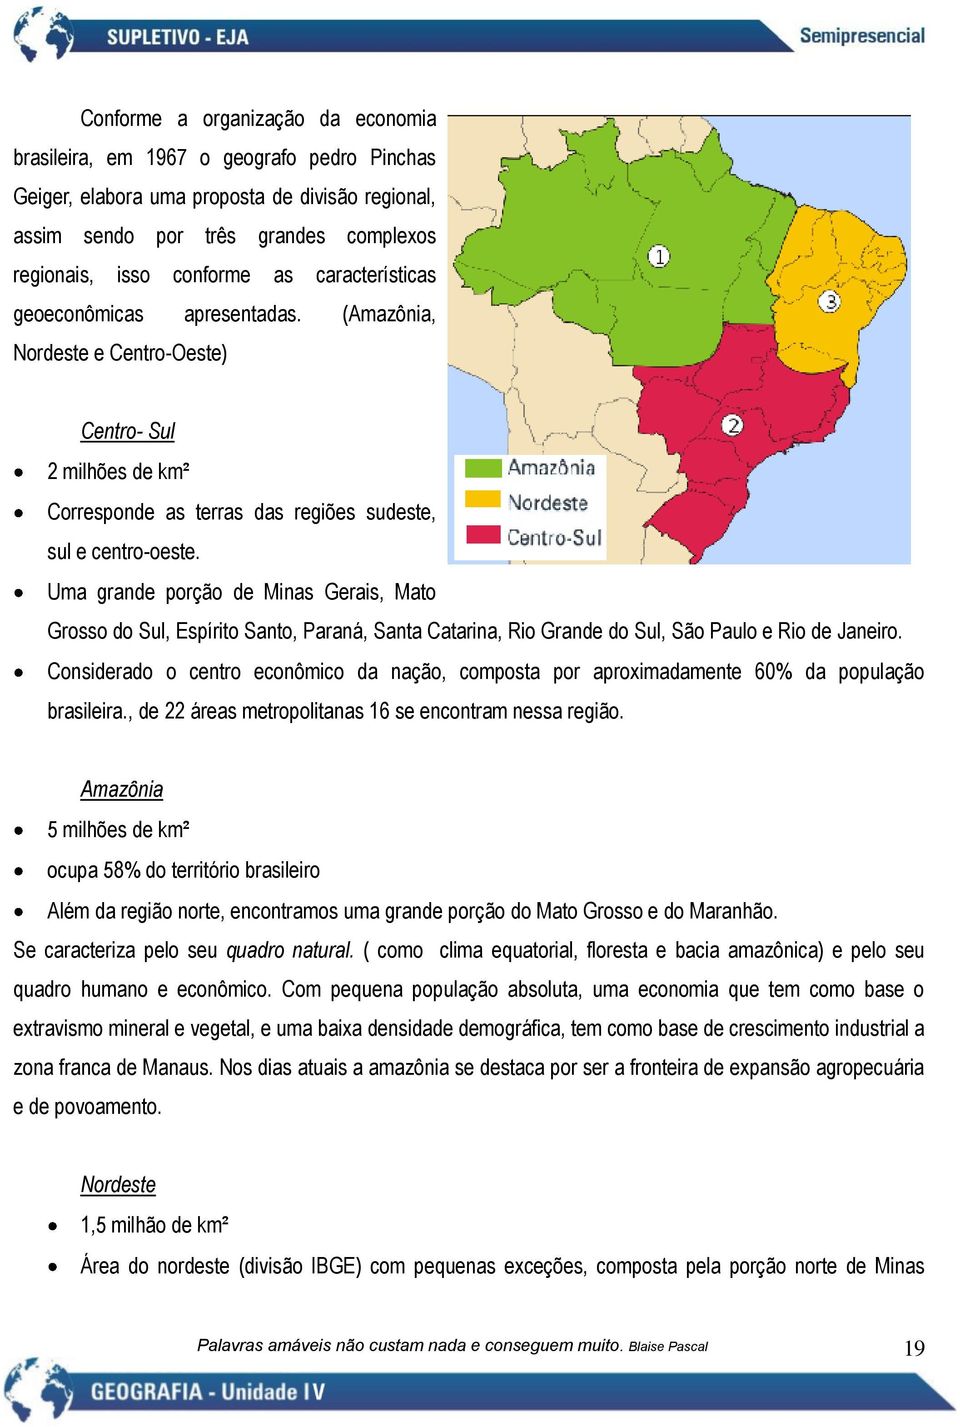 Uma grande porção de Minas Gerais, Mato Grosso do Sul, Espírito Santo, Paraná, Santa Catarina, Rio Grande do Sul, São Paulo e Rio de Janeiro.